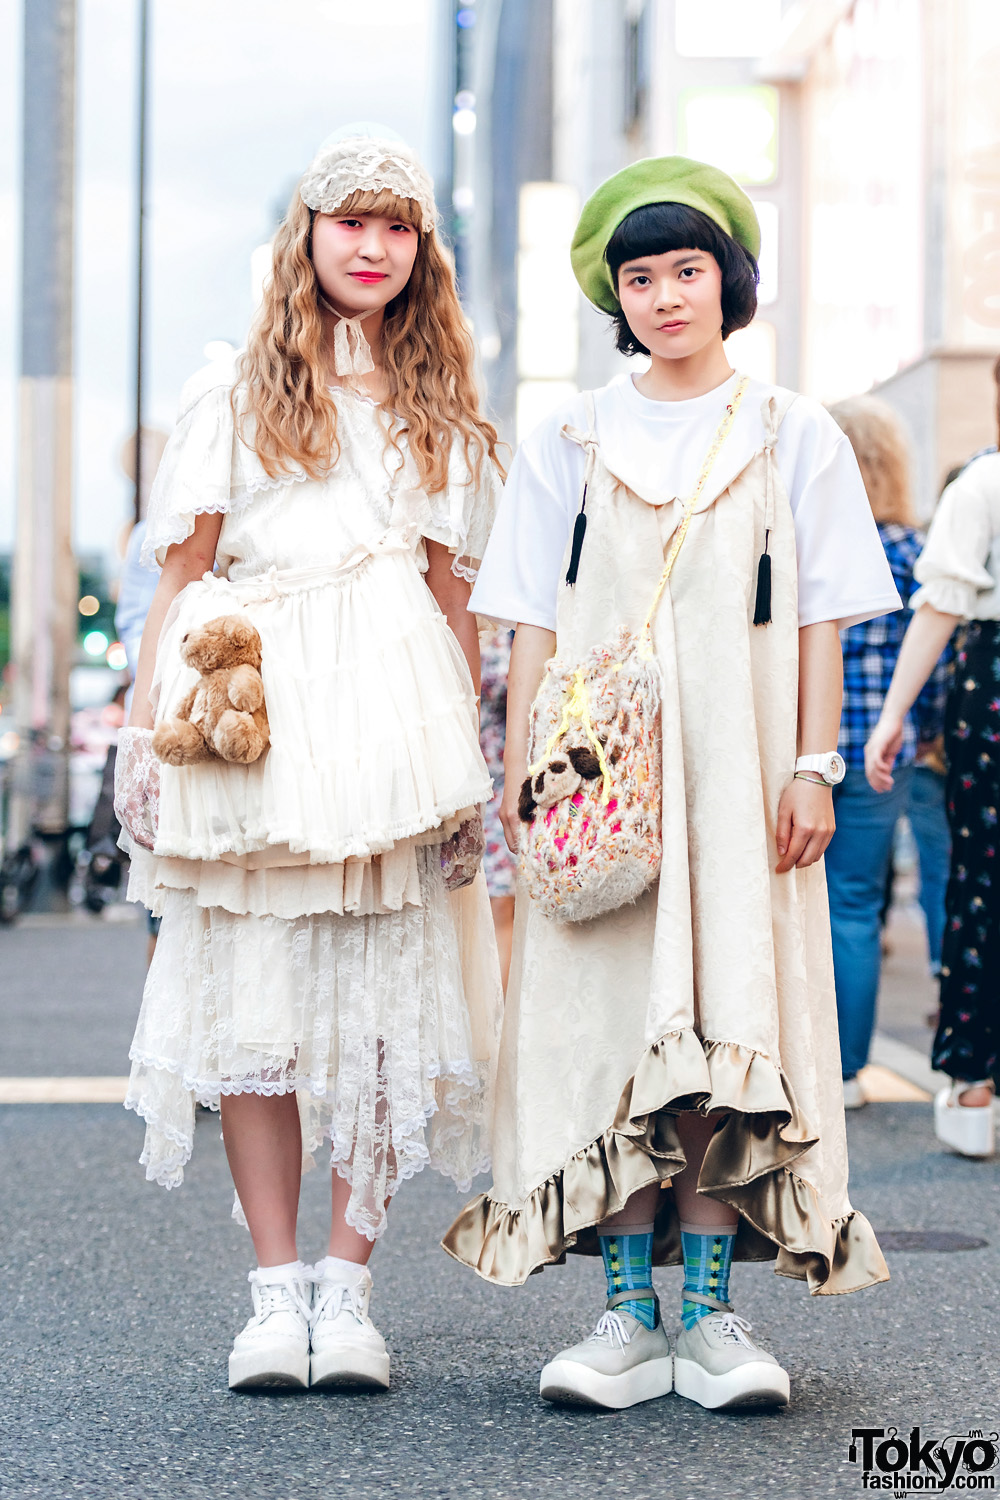 Mori Girl | Tokyo Fashion News